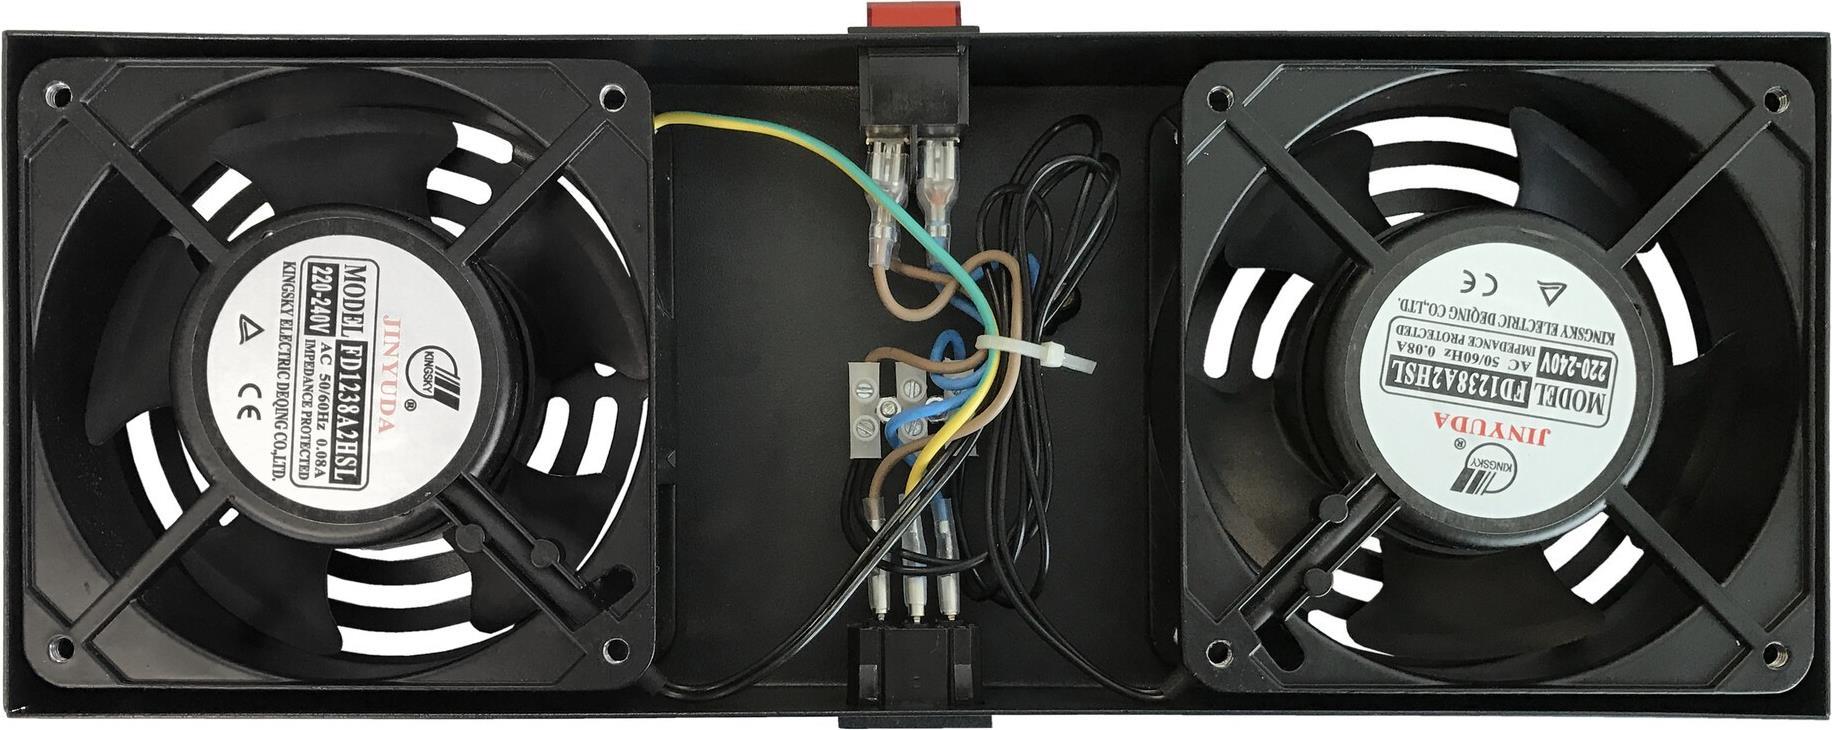 DS-IT Ventilator mit Thermostat - Paket für Montage in einem Wandschrank (DS-FT-Wall)